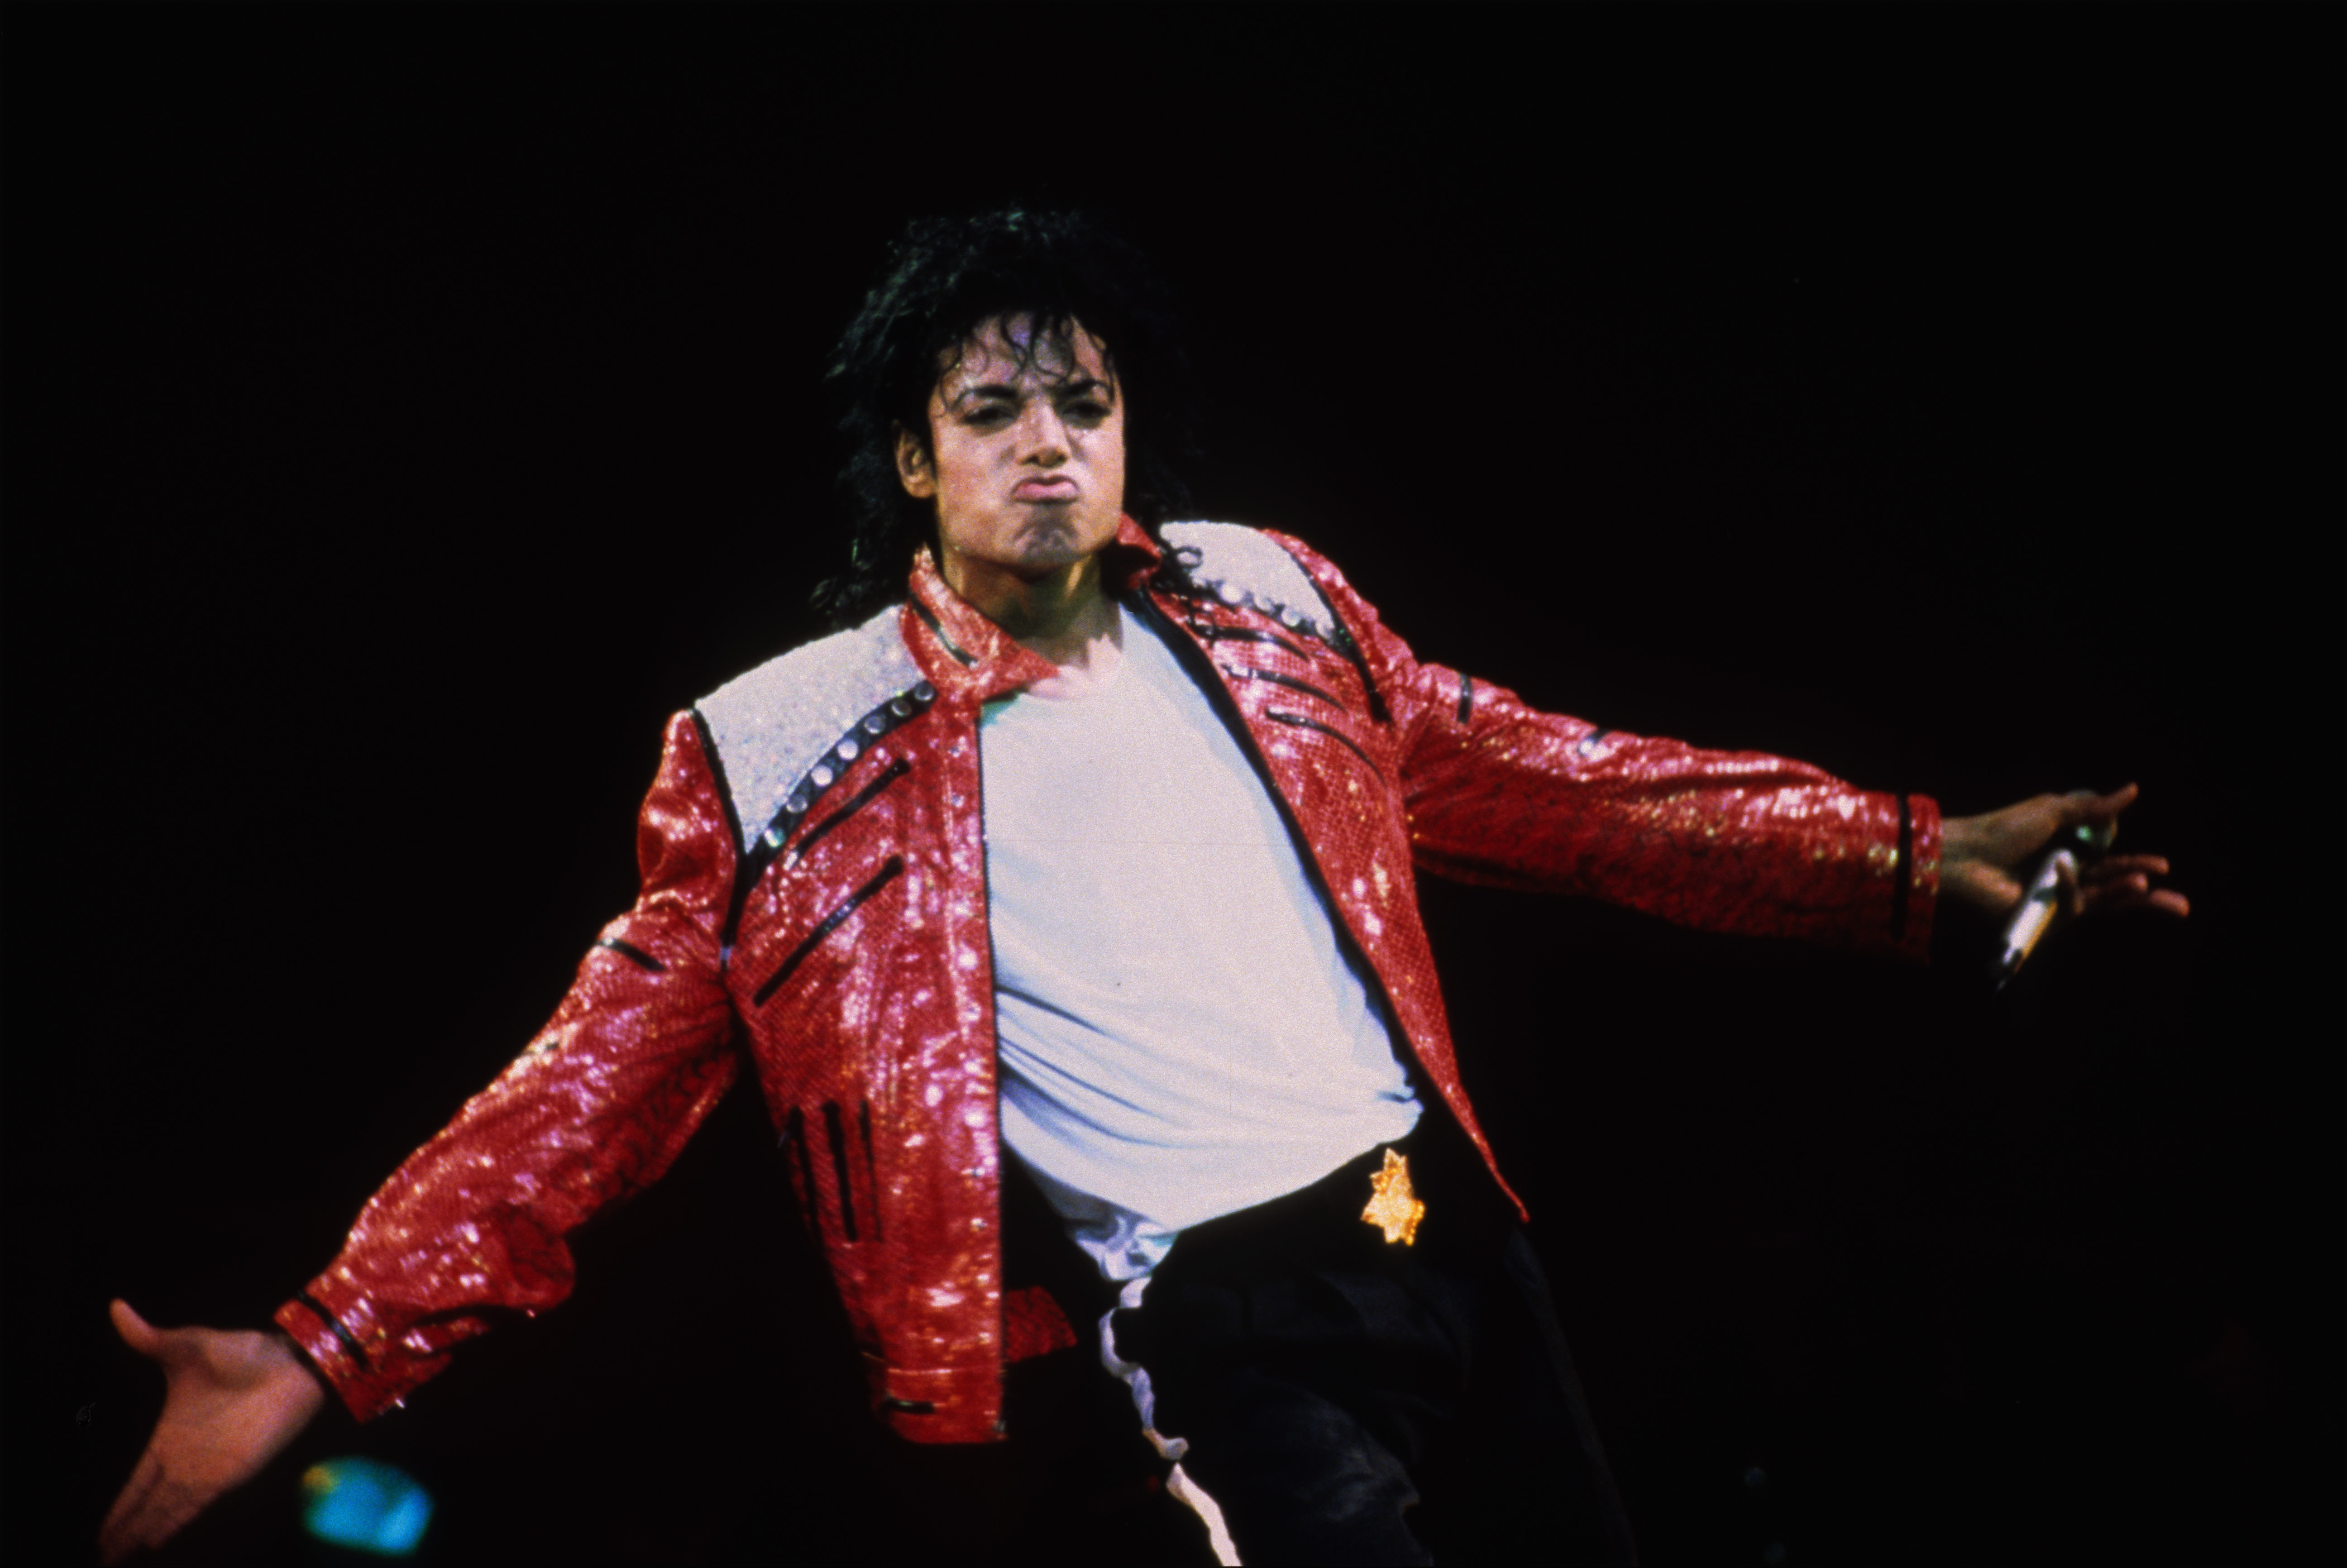 Michael Jackson se produit sur scène, vers 1986 | Source : Getty Images